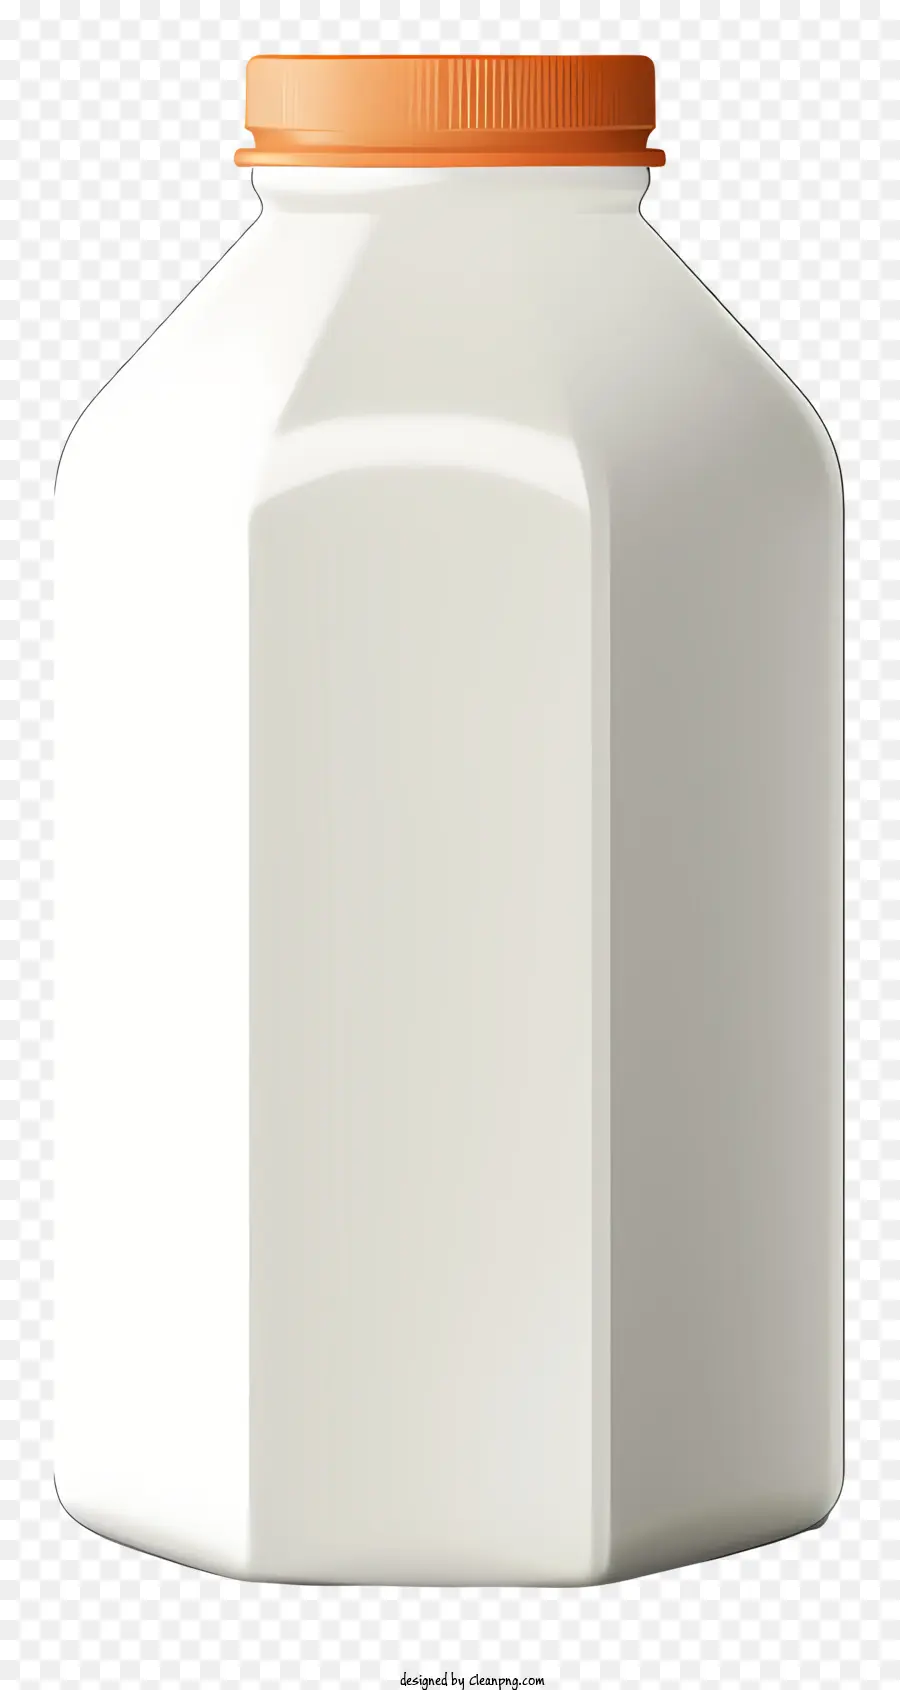 Contenitore bianco tappo in plastica Forma cilindrica VITA SUPERFICAZIONE liscia sul coperchio - Contenitore cilindrico bianco con tappo arancione a vite